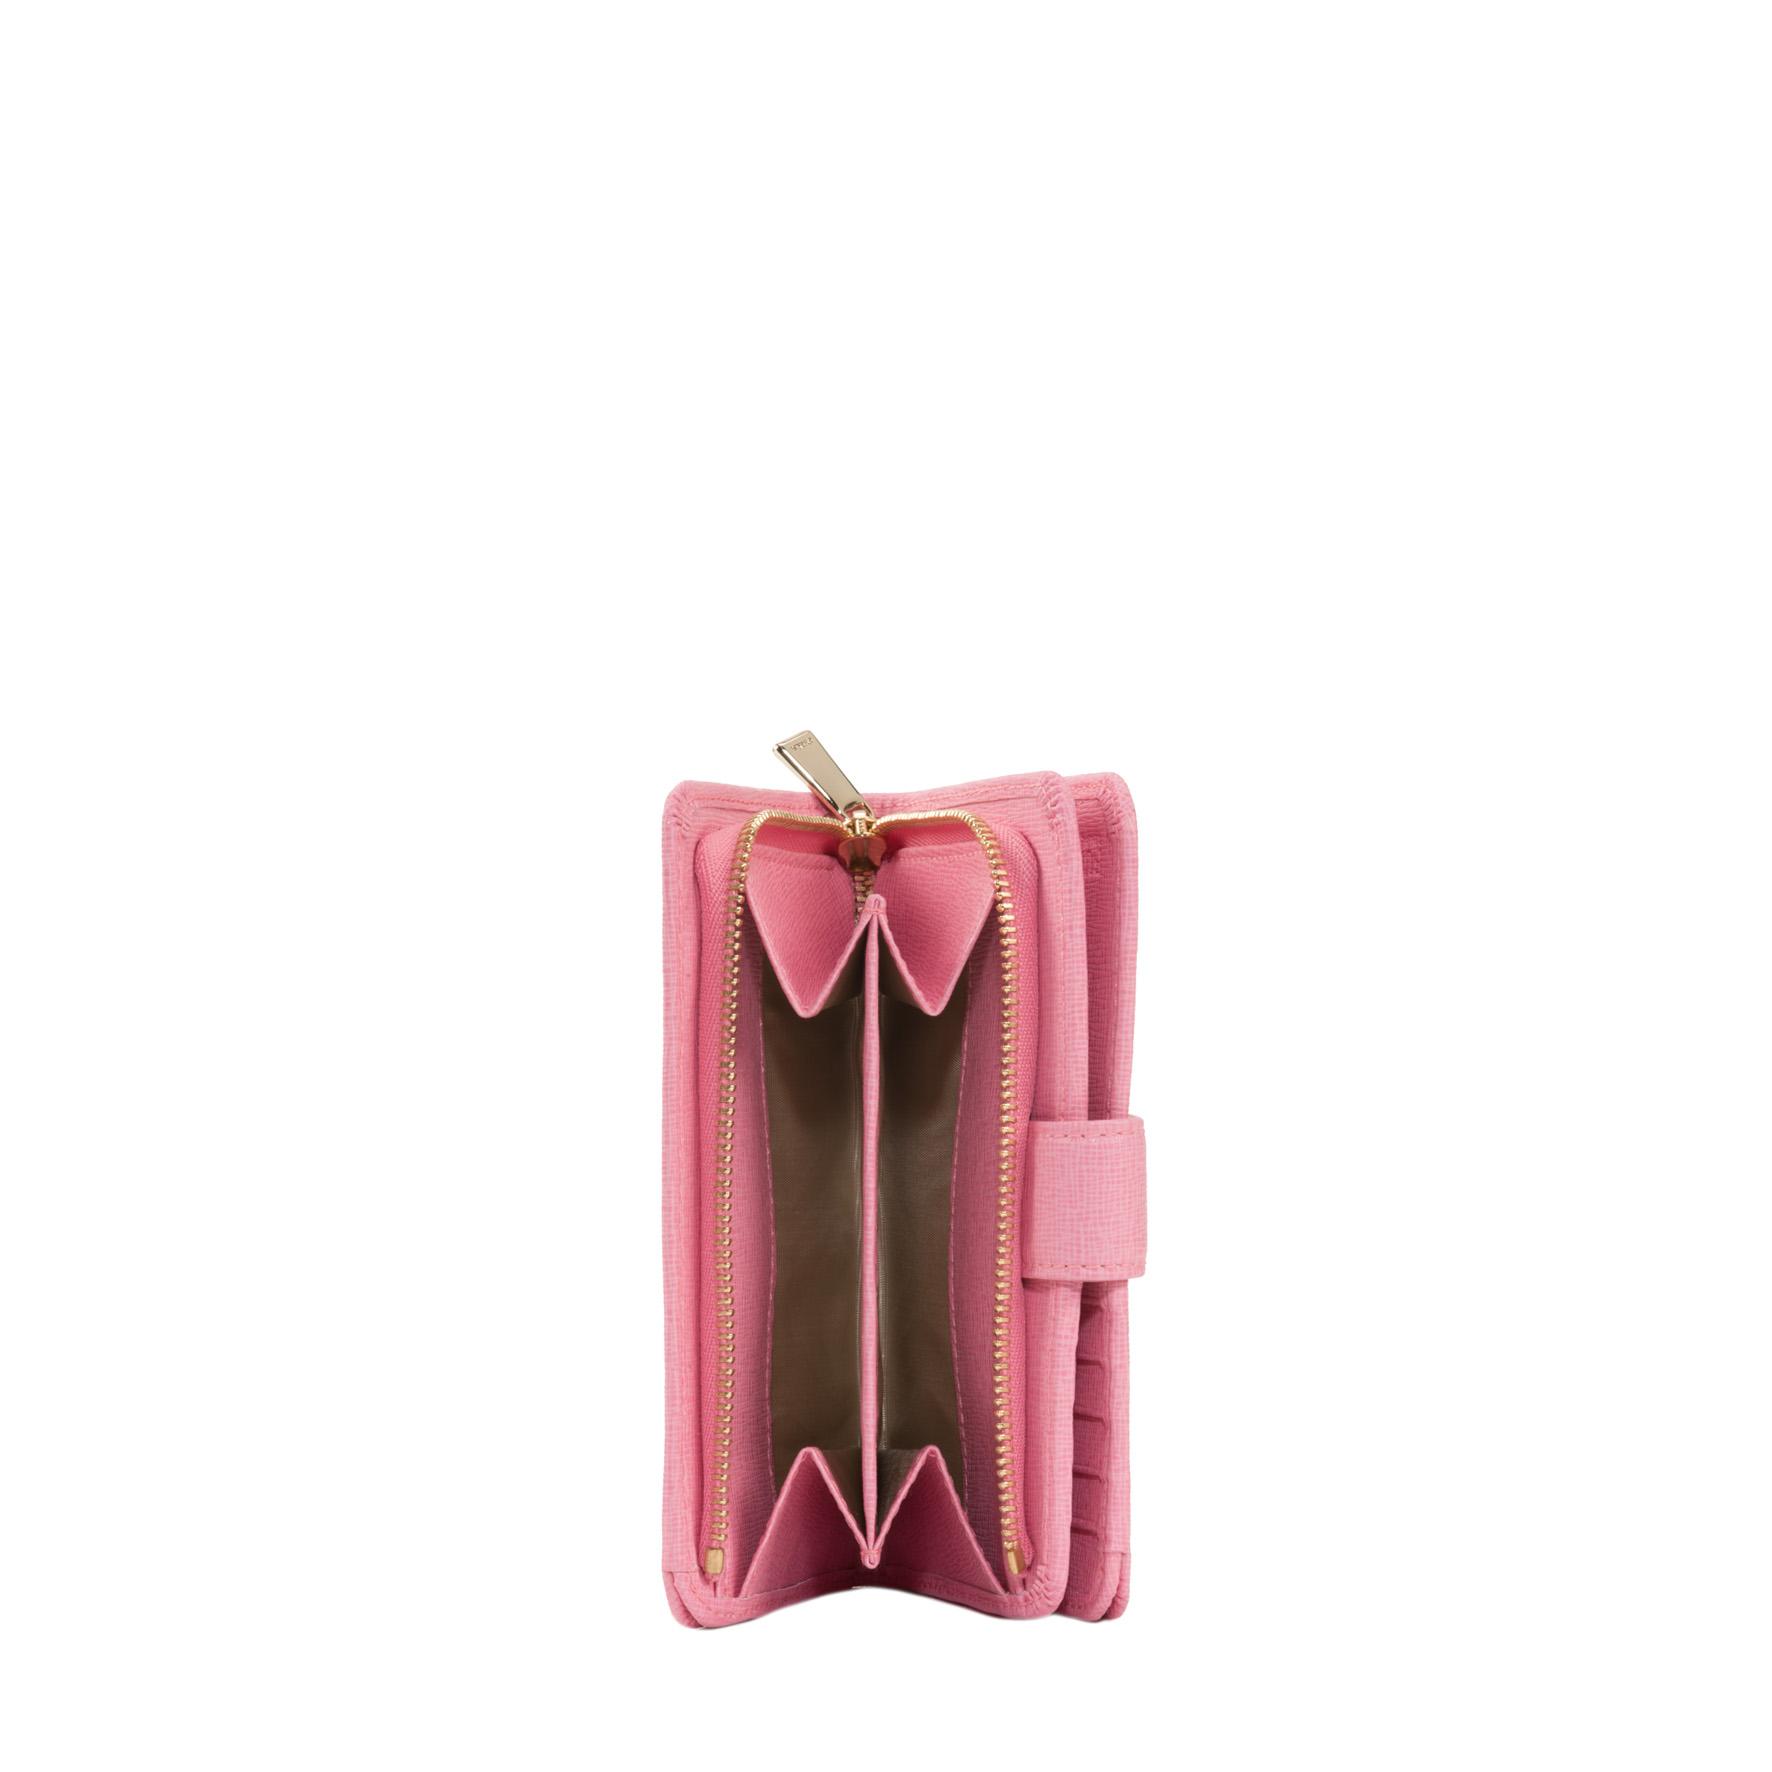 Dettaglio portafogli rosa portamonete con due scomparti e zip